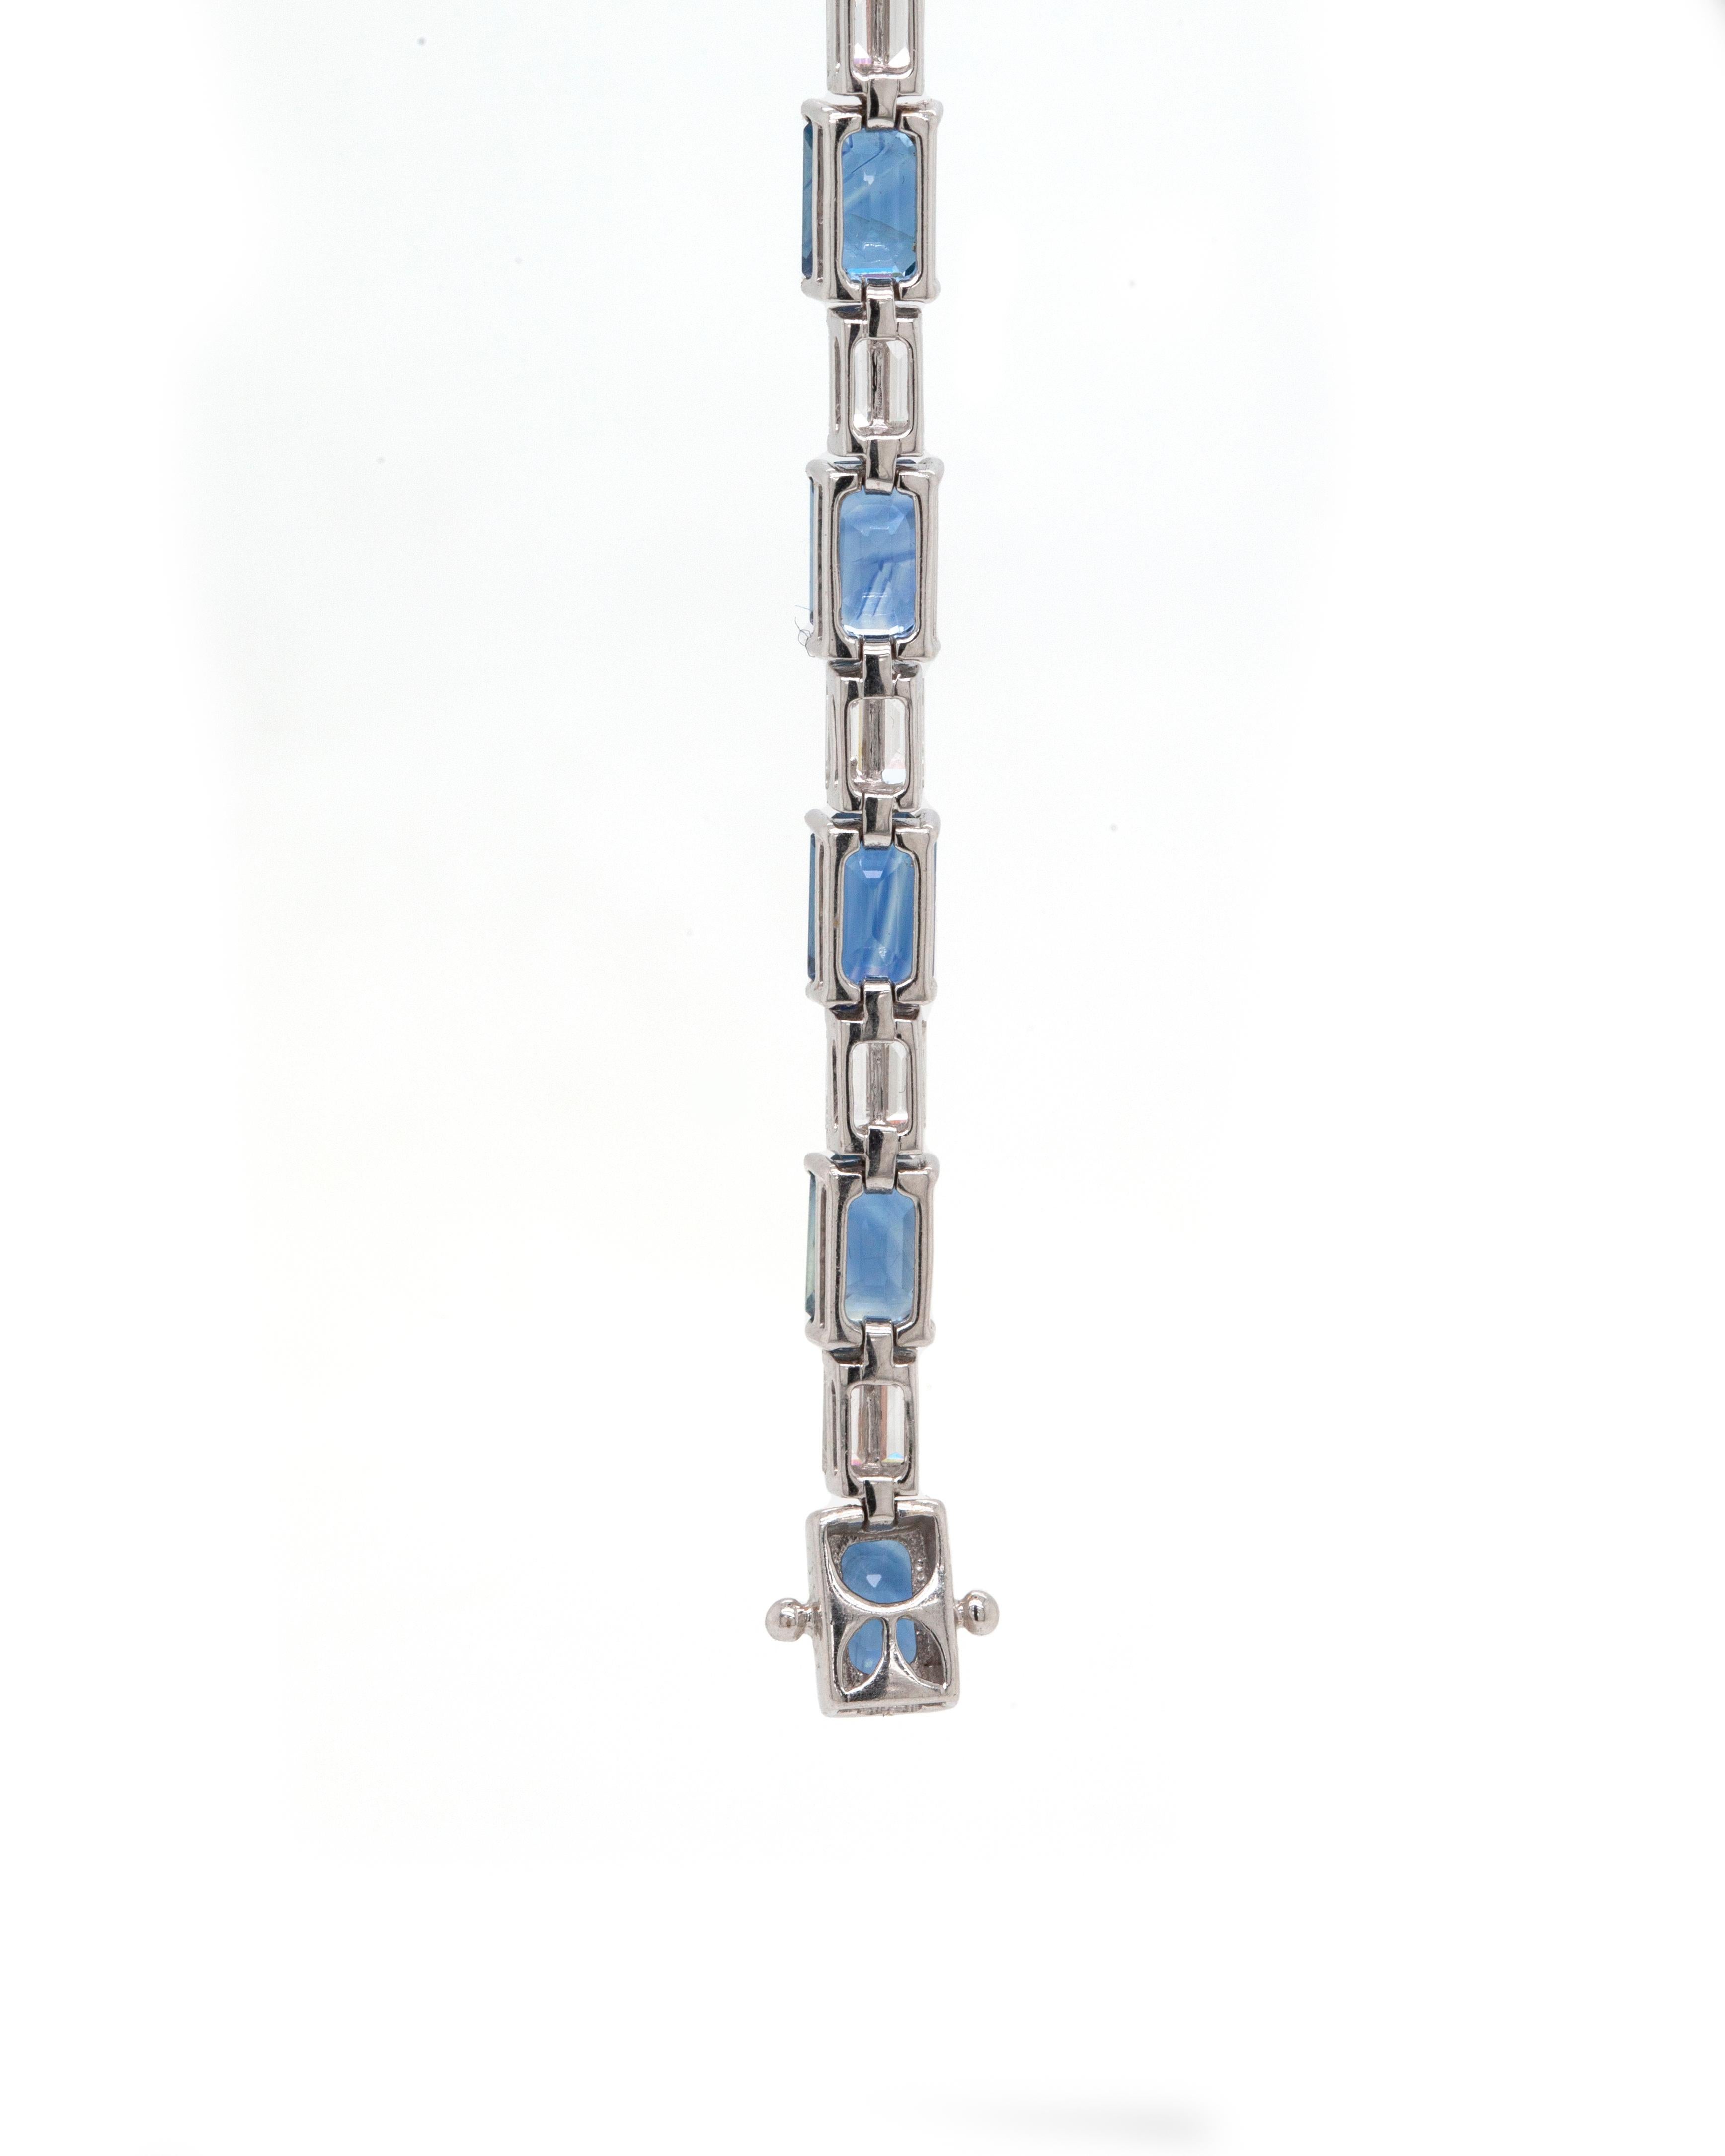 Sobre et élégant, ce magnifique bracelet en or blanc 18 carats présente 15 saphirs bleus de taille émeraude, tous montés en serti ouvert à quatre griffes, pour un poids total approximatif de 13,00 ct. Alternant avec les riches saphirs et créant un